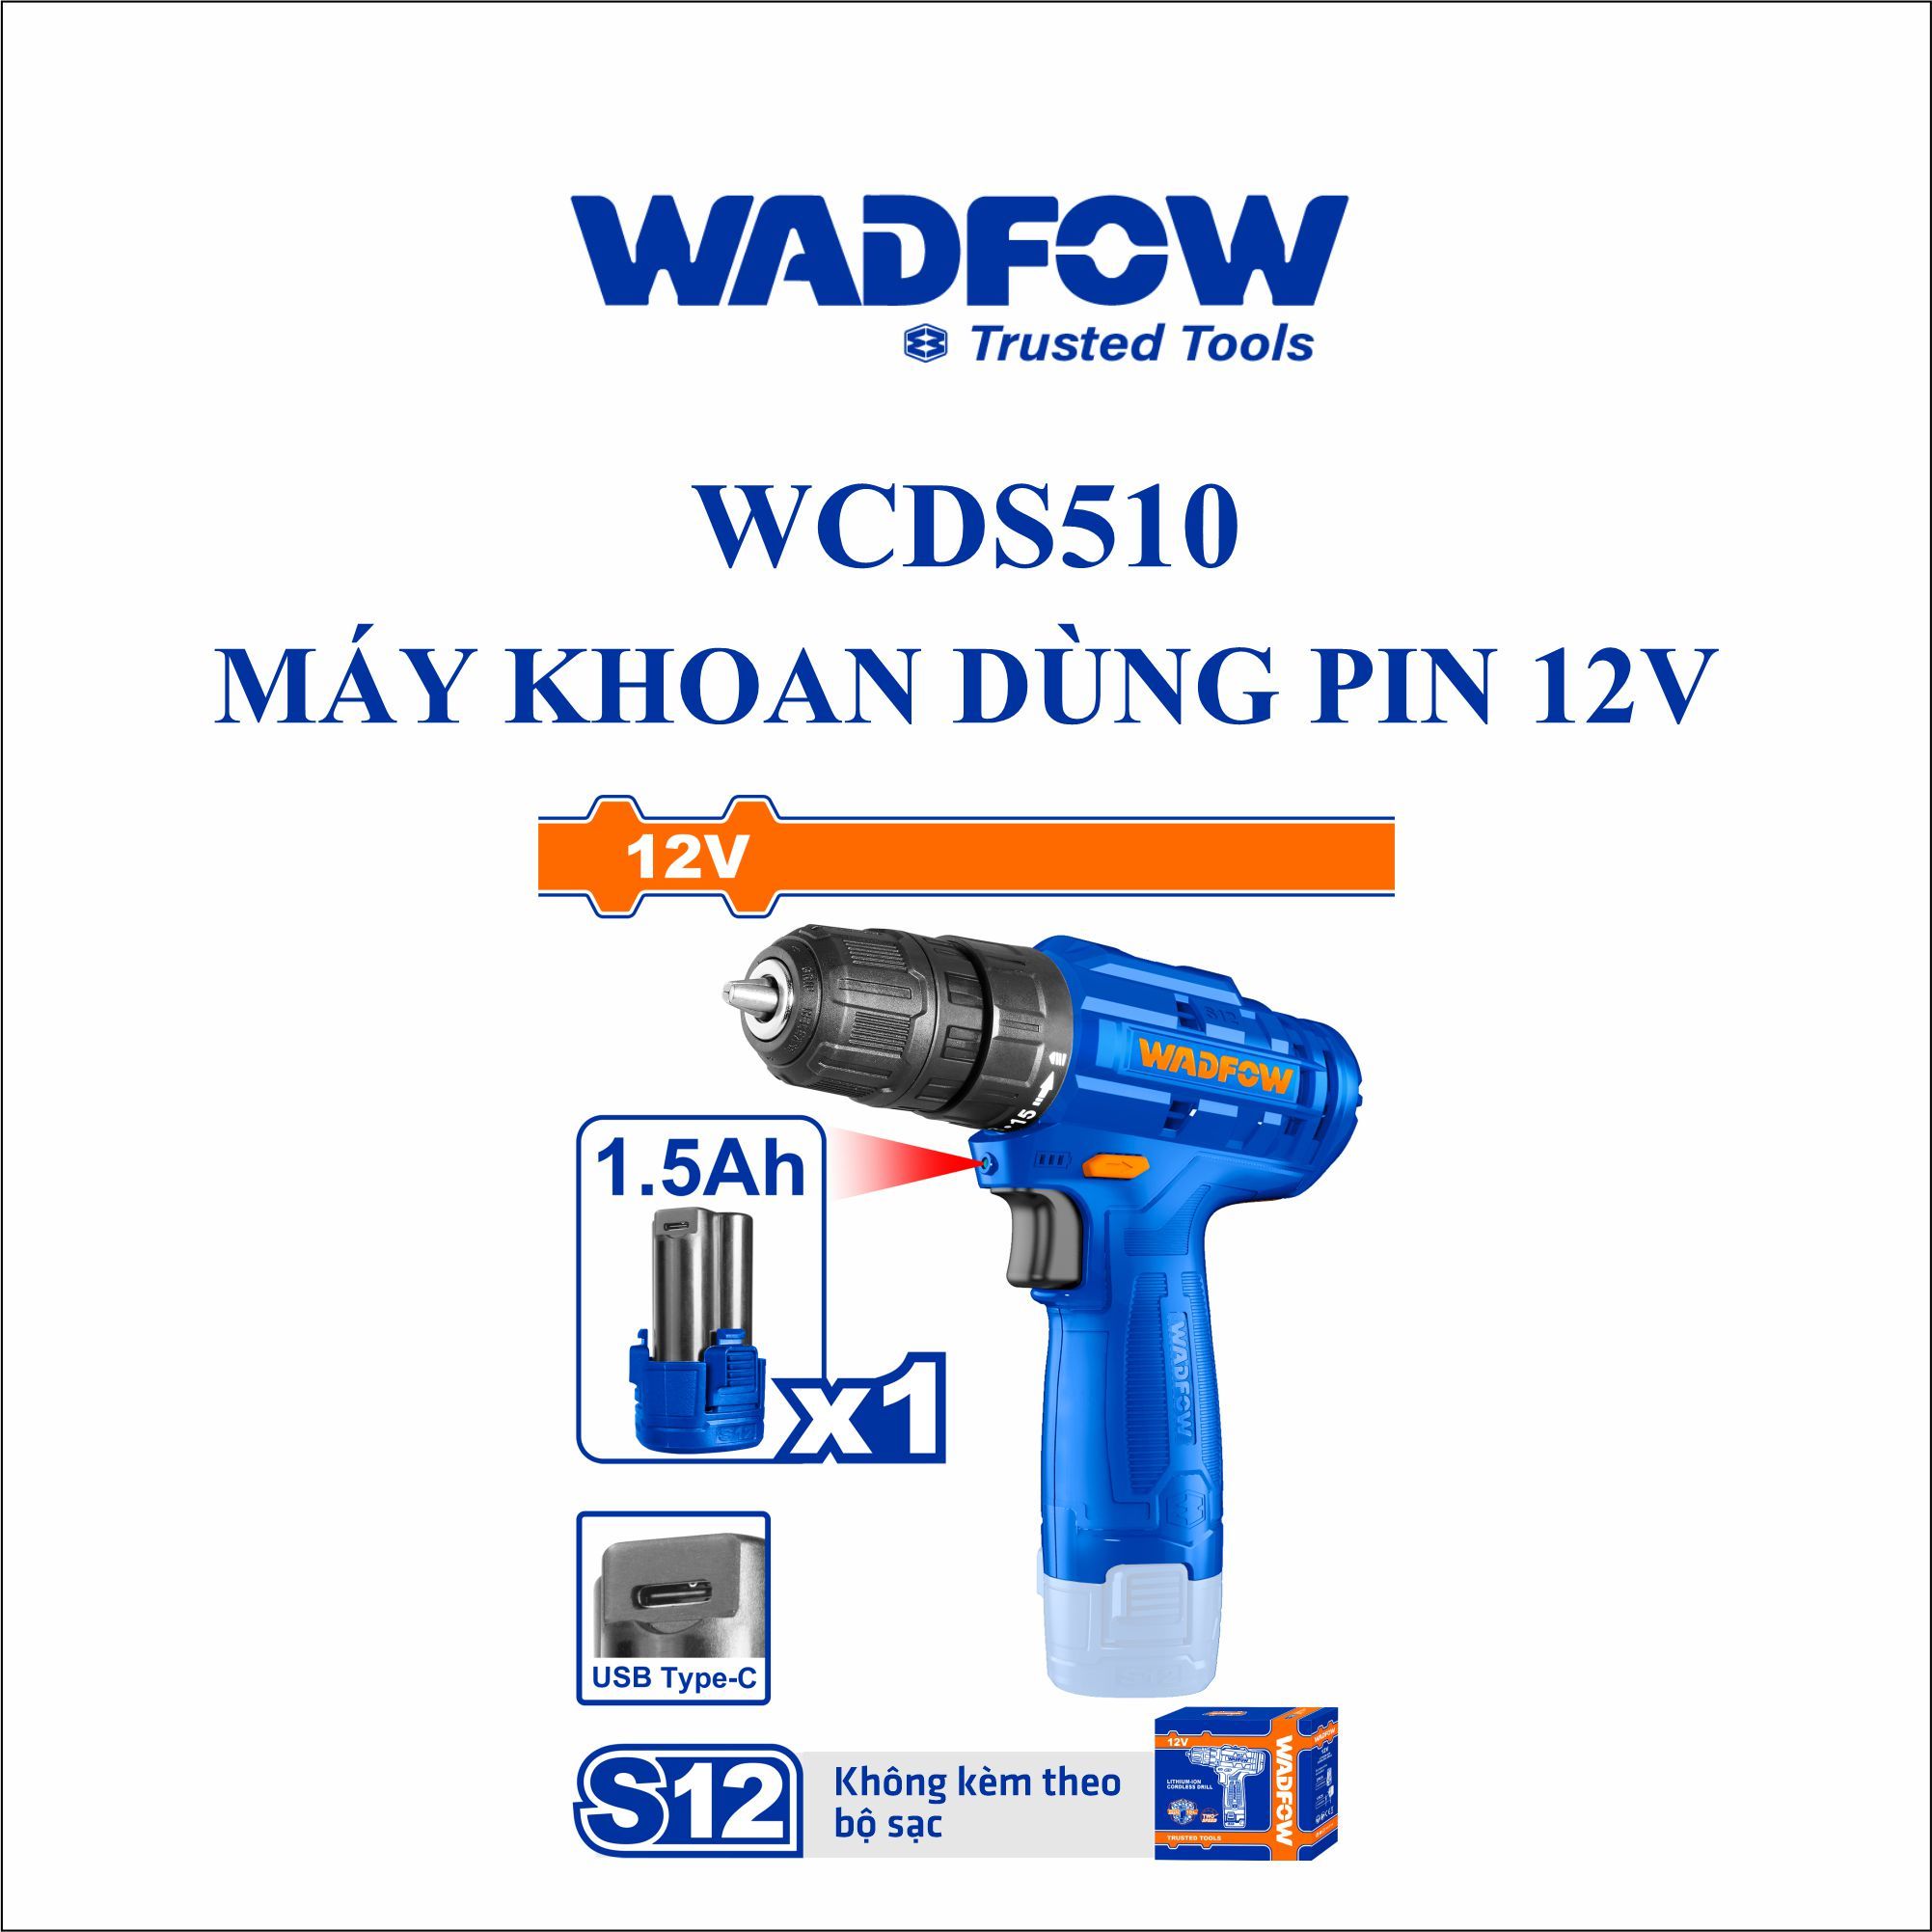  Máy khoan dùng pin 12V WADFOW WCDS510 